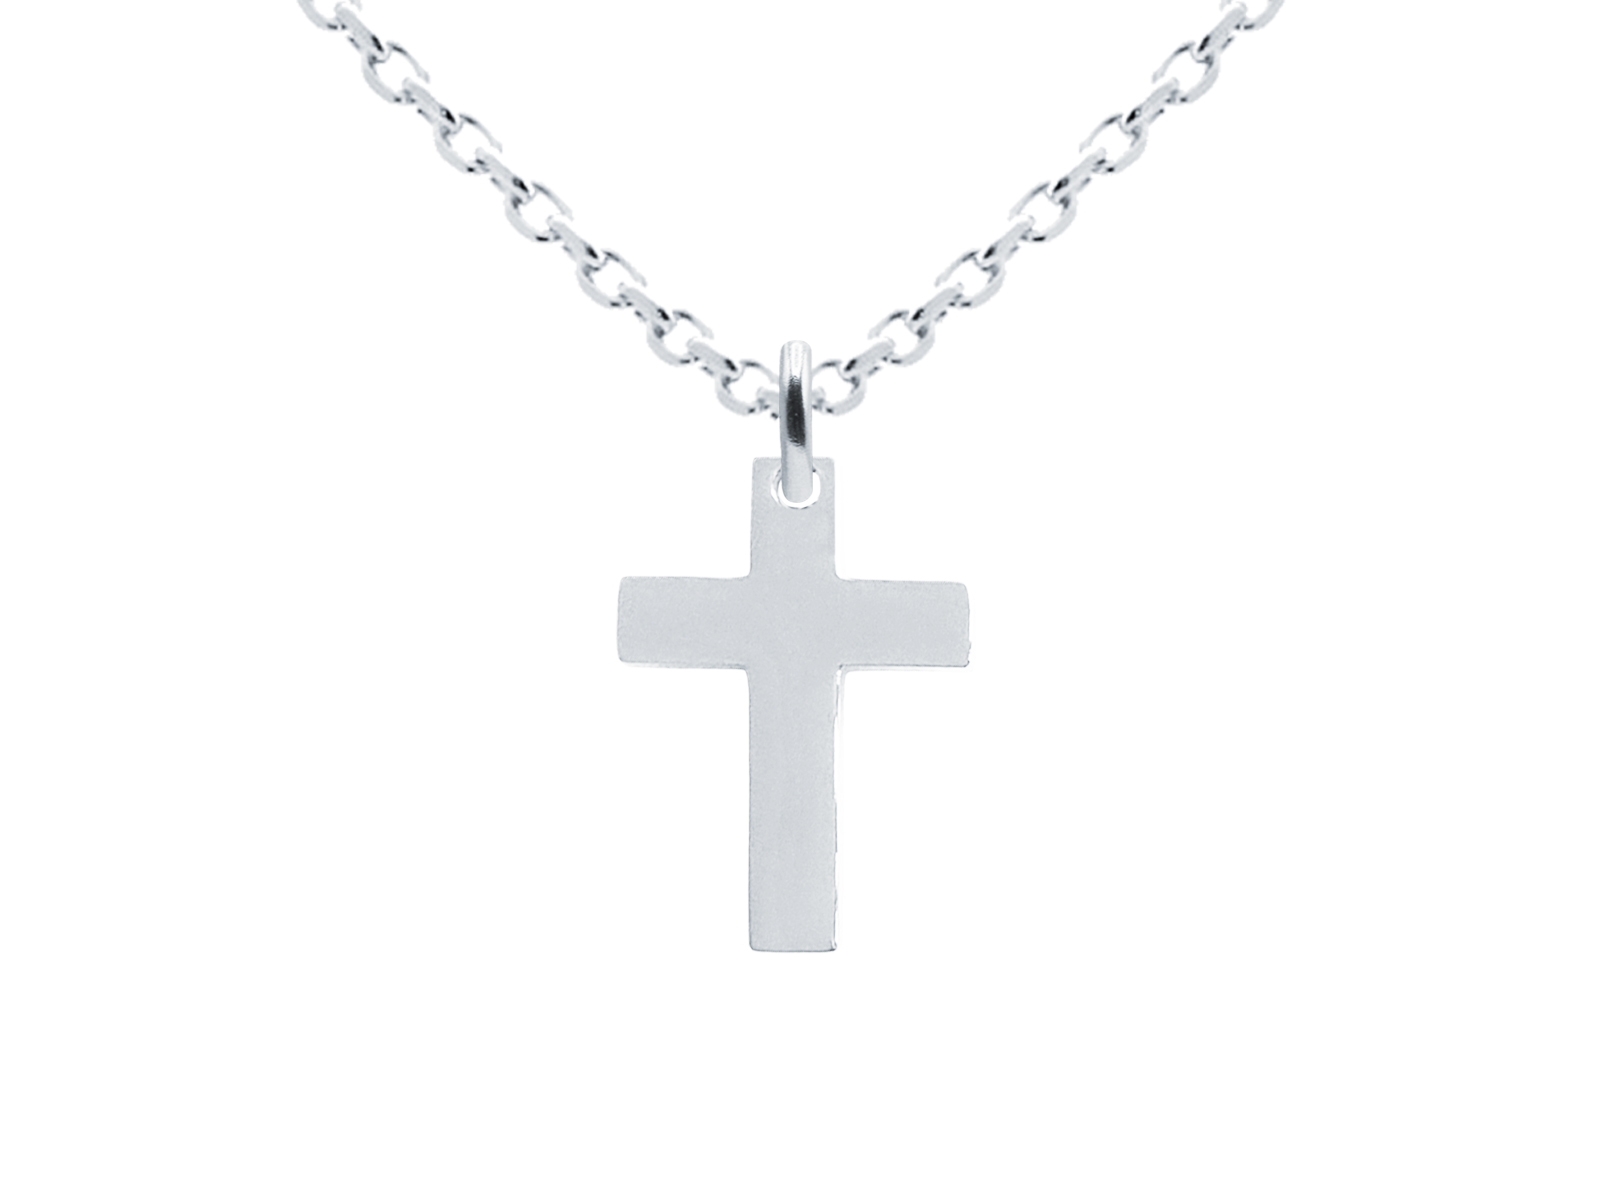 Collier orné d'un pendentif croix (14mm) en acier inoxydable argenté